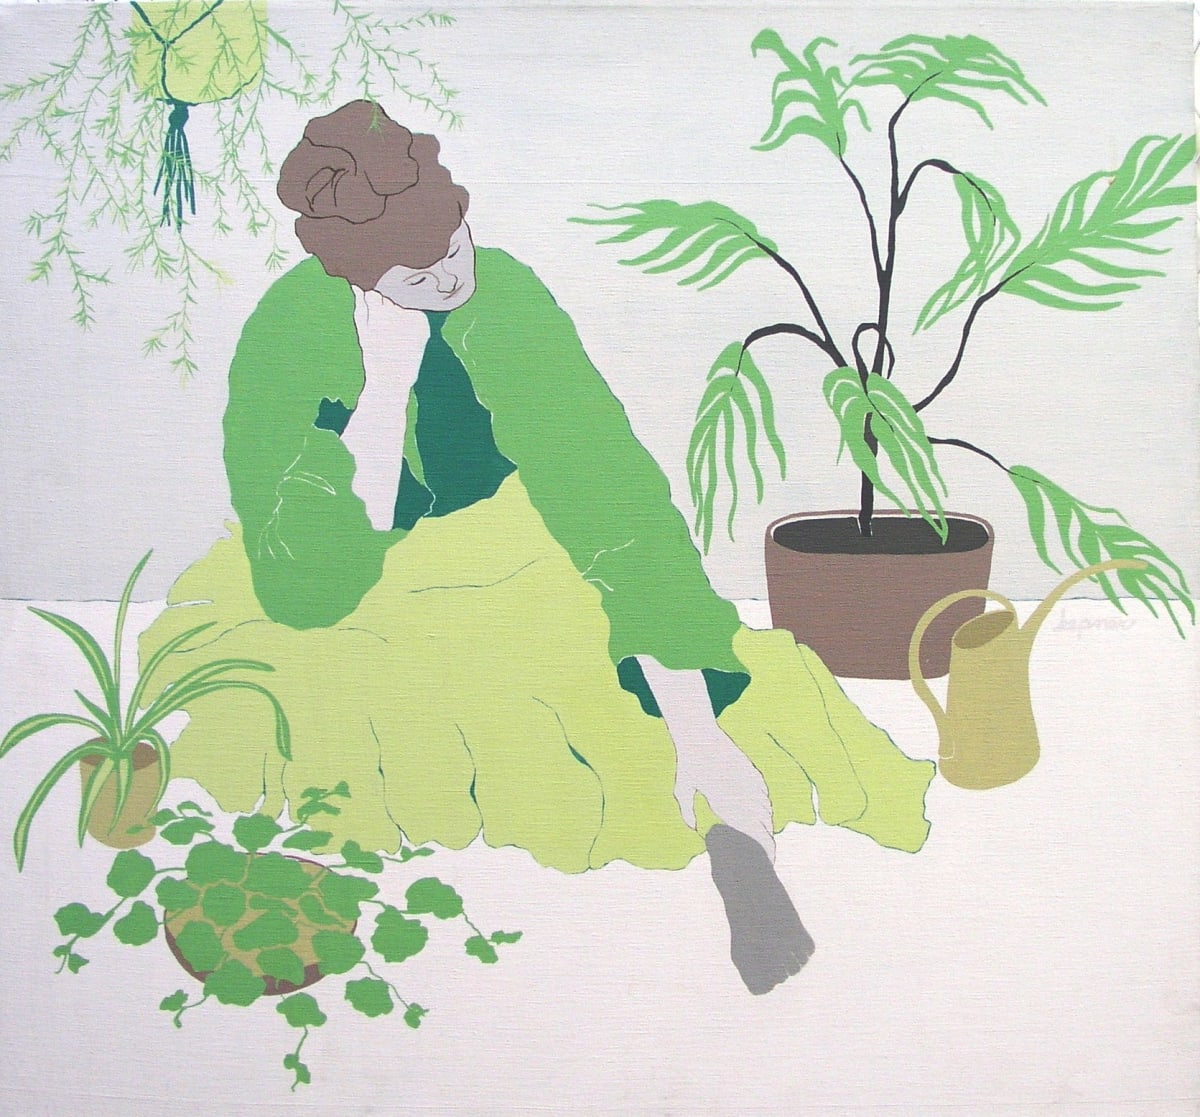 Indoor Gardener by Nancy Kepner  Image: "Indoor Gardener" by Nancy Kepner, 1977